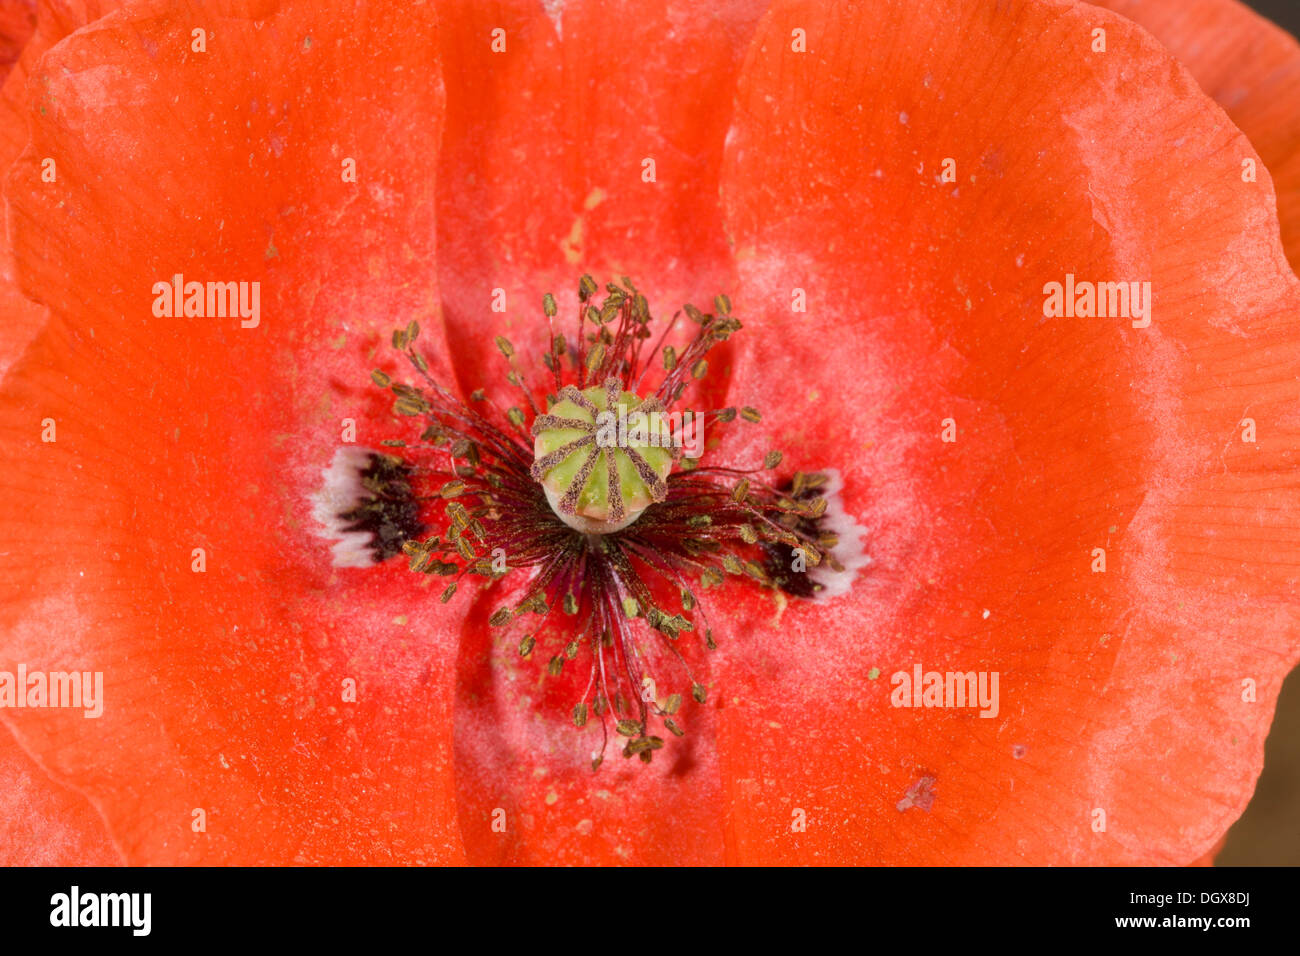 Papavero comune - stami, gli stimmi e carpels nel centro, con petali di colore rosso. Foto Stock